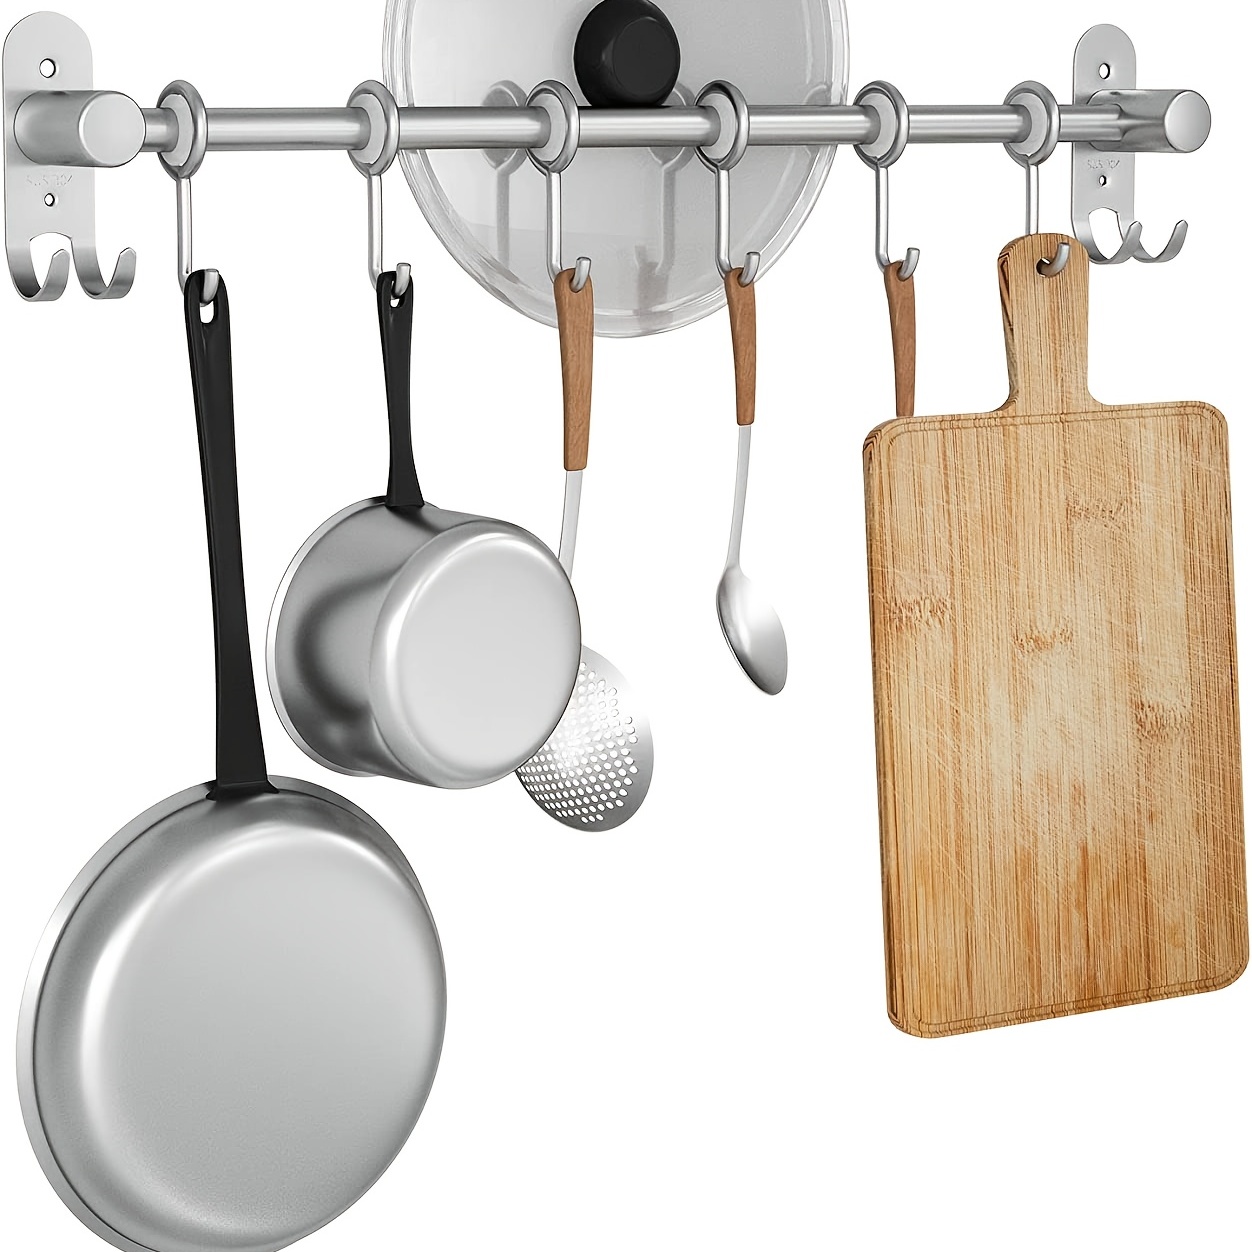  eForwish Soporte para utensilios de cocina de acero inoxidable,  riel colgante para organizar ollas, sartenes, cuchillos de cocina,  accesorios para colgar en la pared, barra de barra debajo del : Hogar